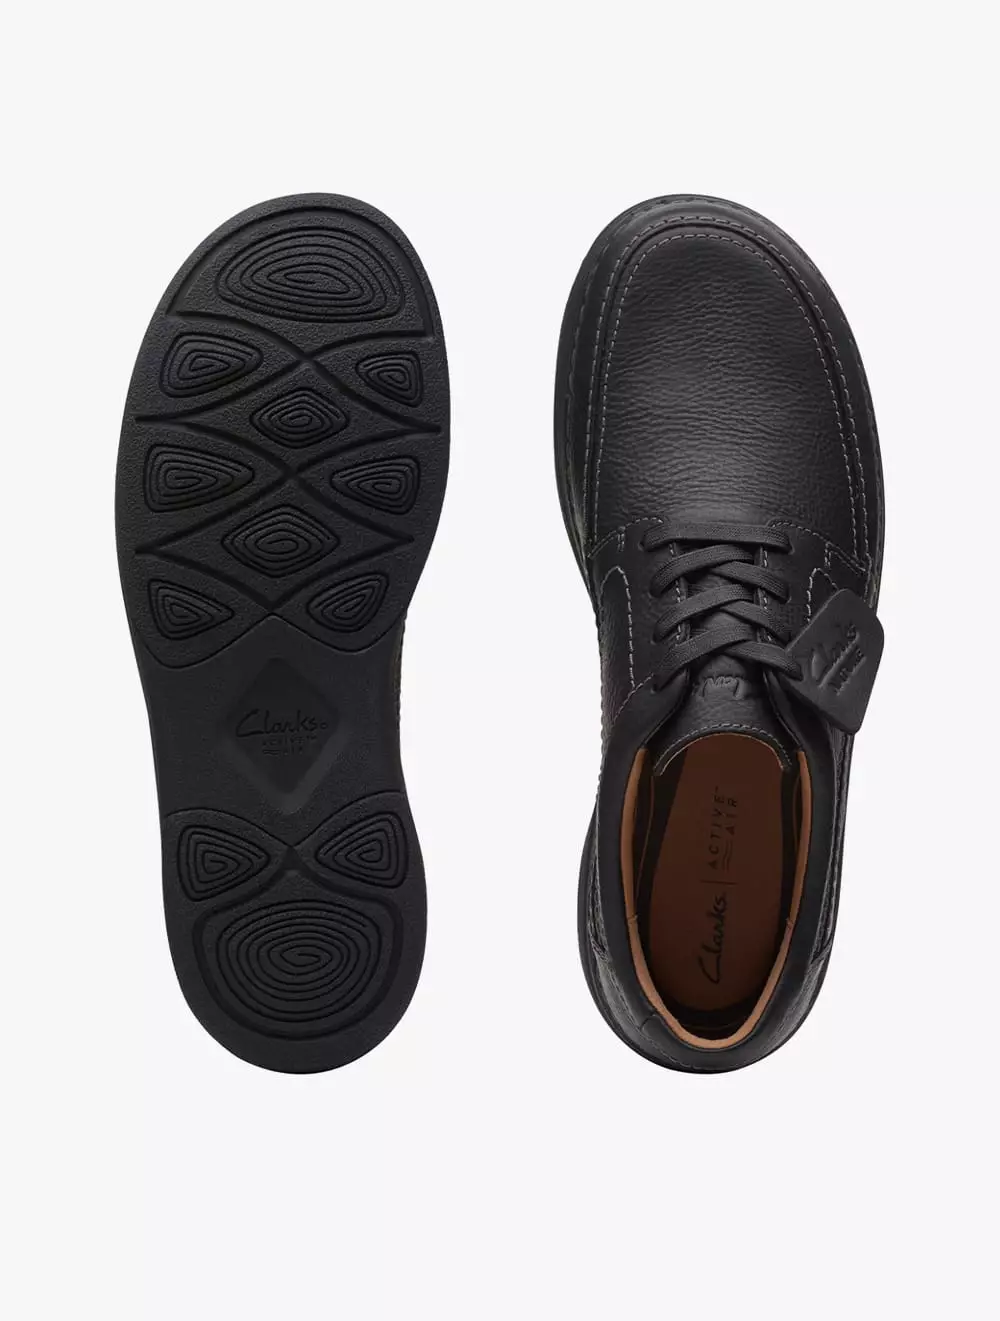 Jual Clarks Clarks Men's Sneakers CourtLite Tie- Black - Black Original  2023